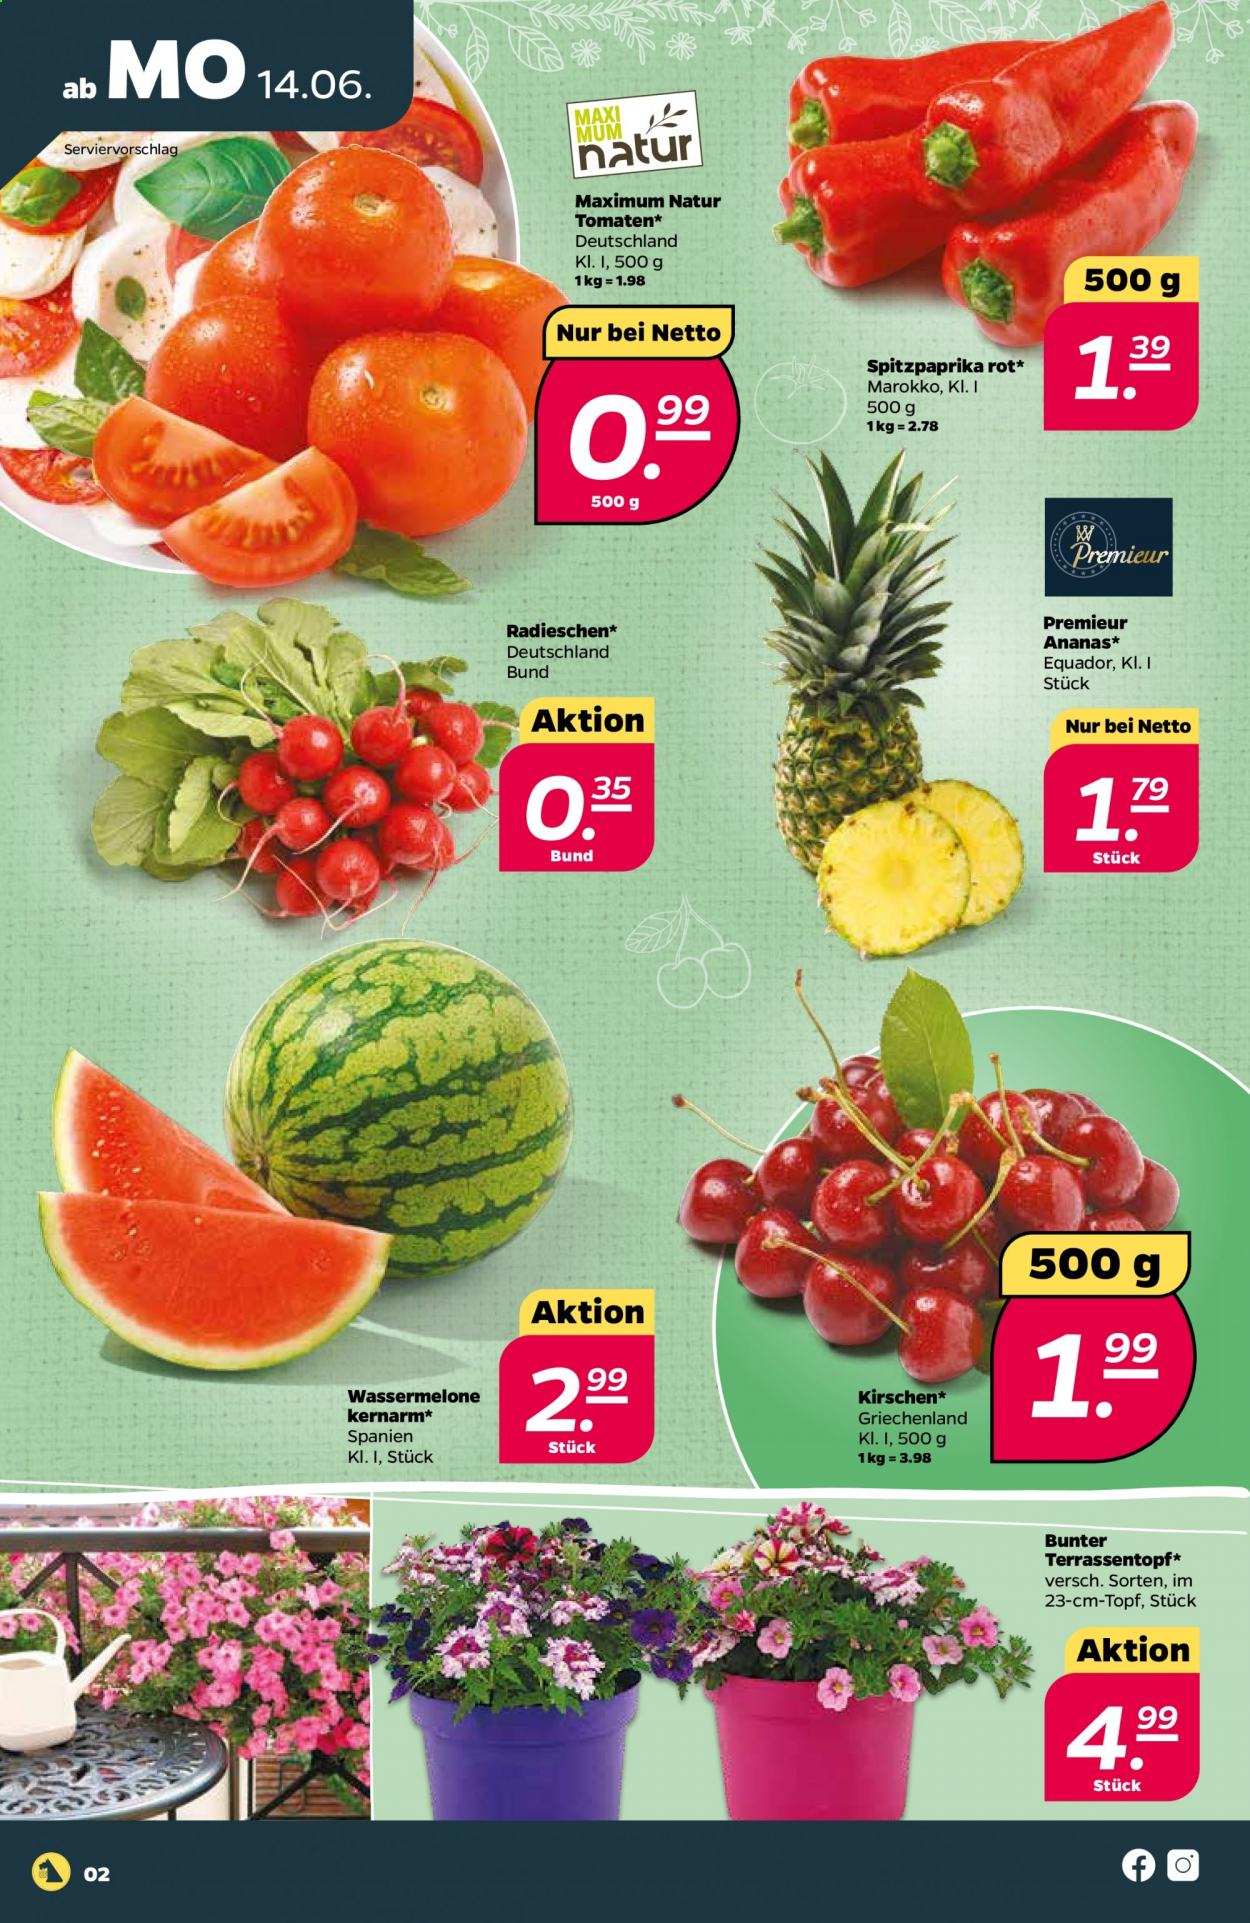 thumbnail - Prospekte Netto - 14.06.2021 - 19.06.2021 - Produkte in Aktion - Paprika, Tomaten, Radieschen, Spitzpaprika, Ananas, Kirschen, Wassermelone. Seite 2.